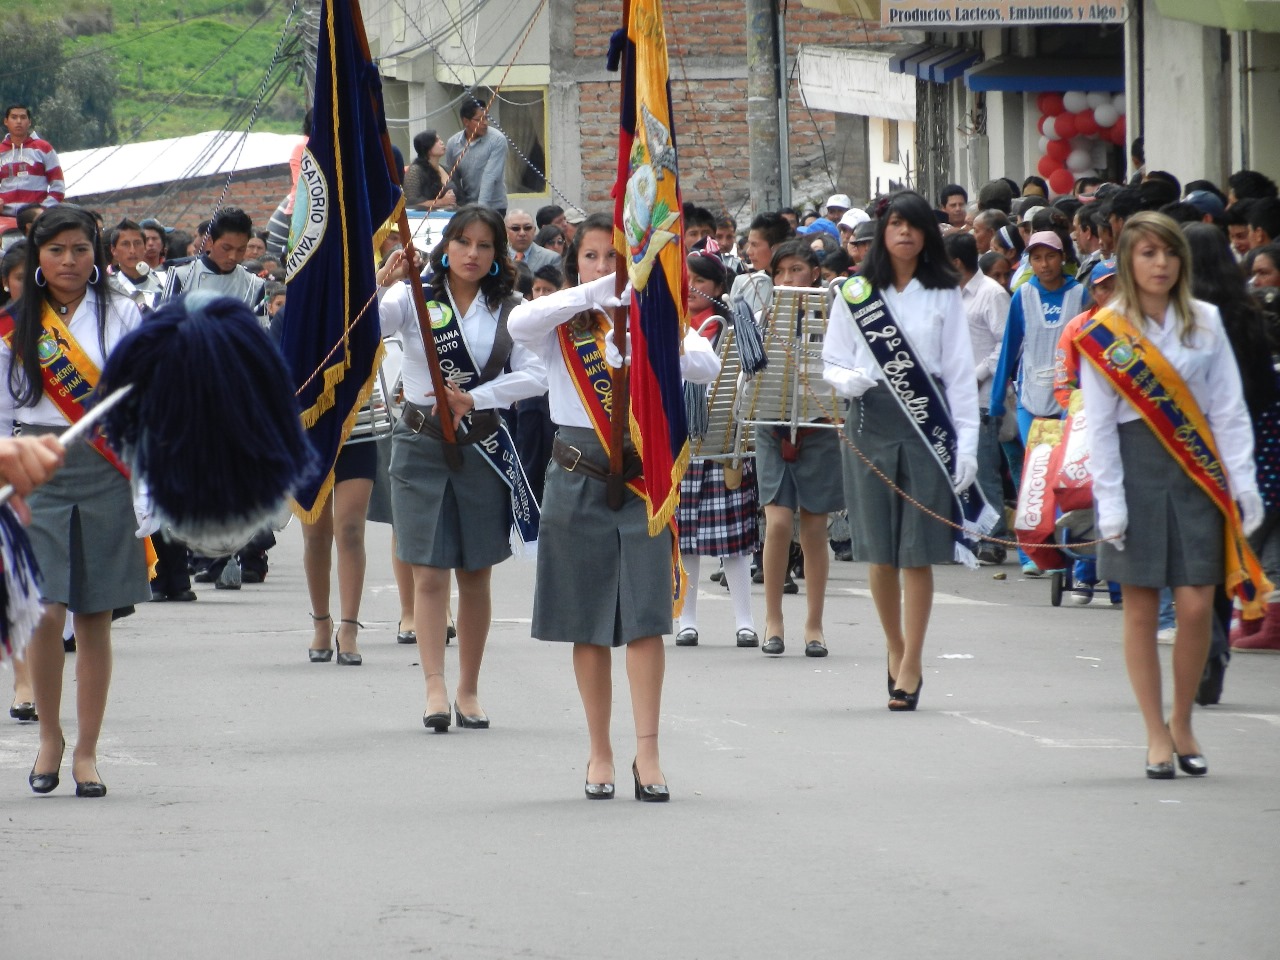 Niños, jóvenes y adultos participarán de este desfile cívico folclórico.